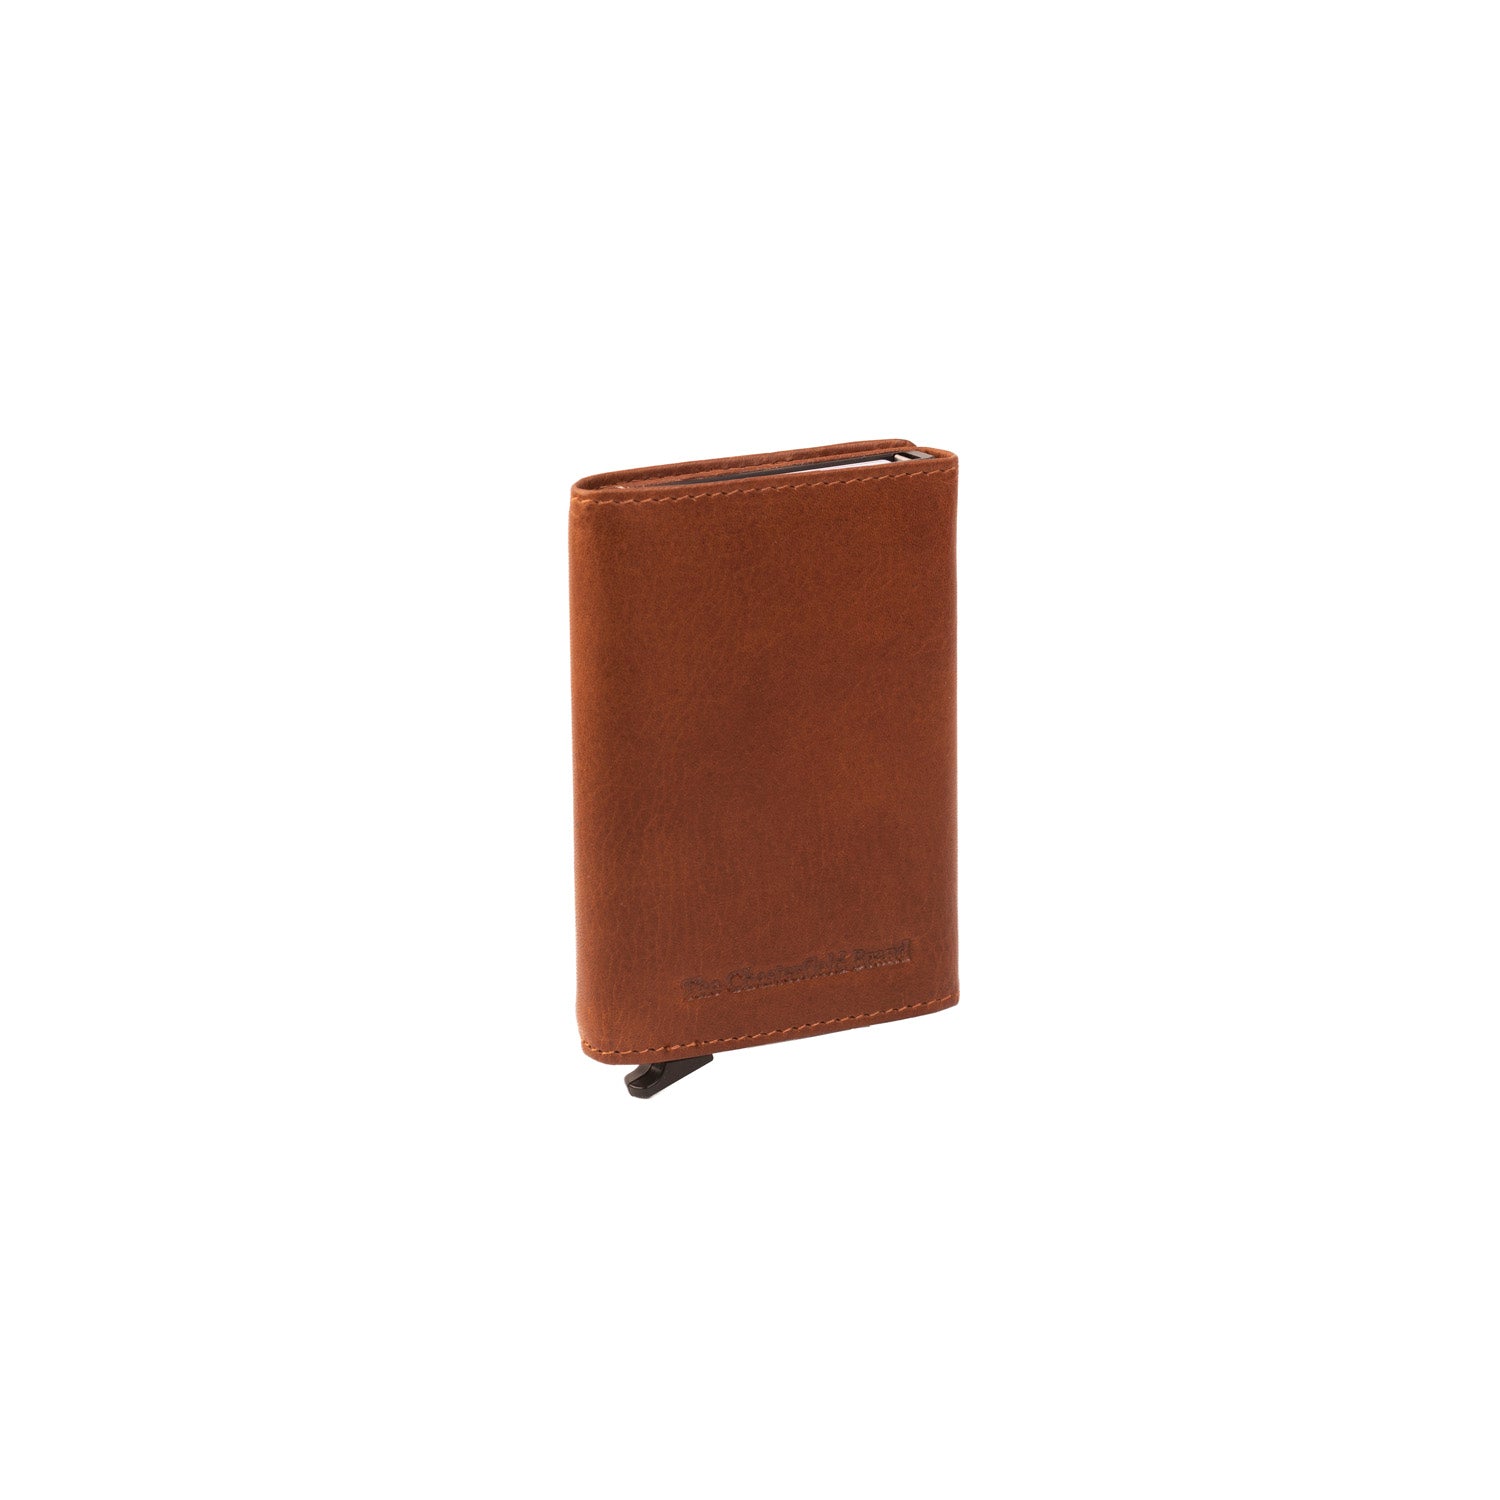 Plånbok med korthållare i aluminium - NewBag4you